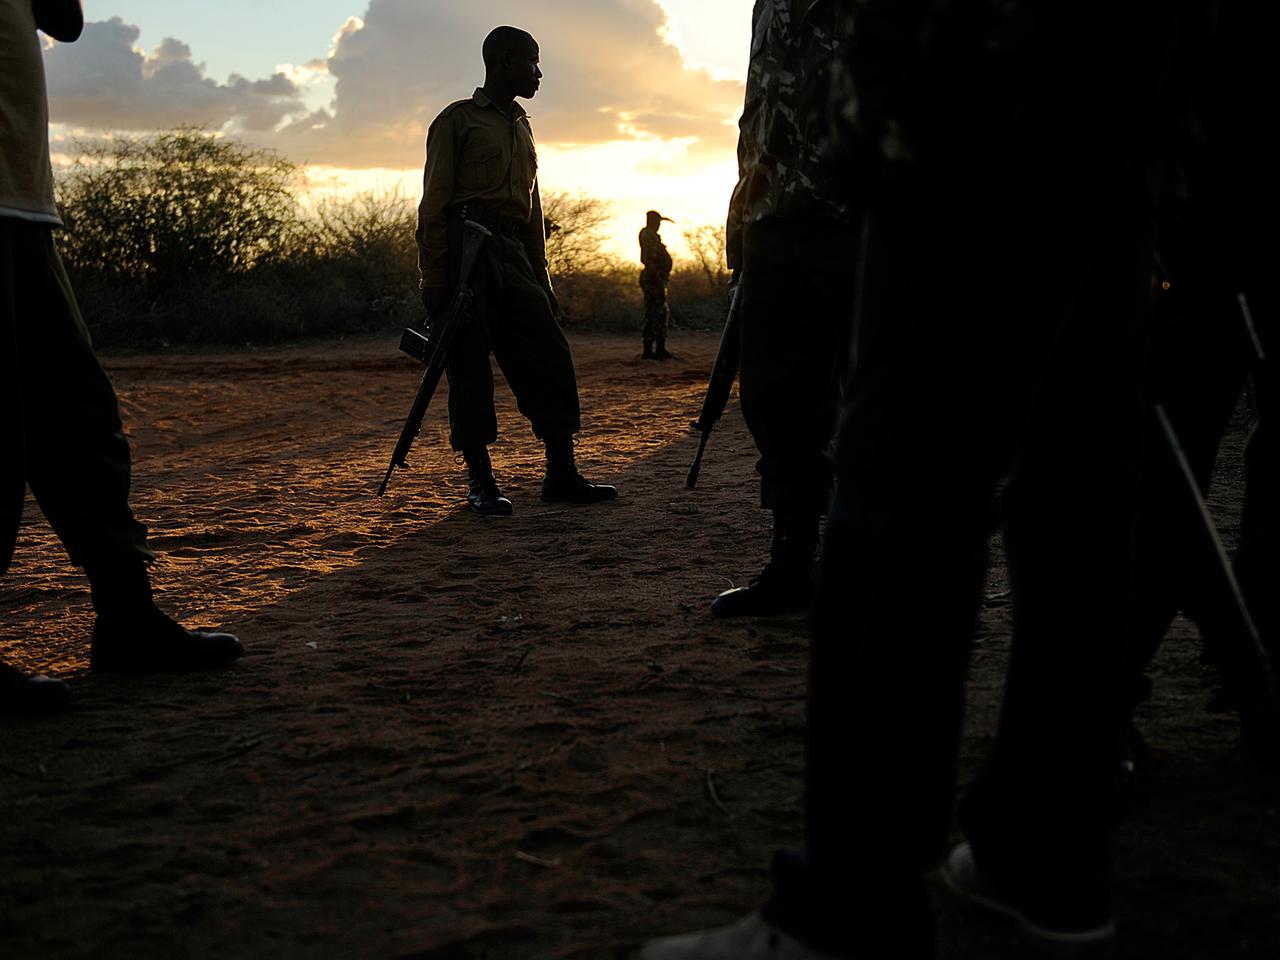 Soldaten im Flüchtlingscamp Dadaab: Häufig mischen sich islamistische Kämpfer unter die Flüchtlinge und entführen sie.